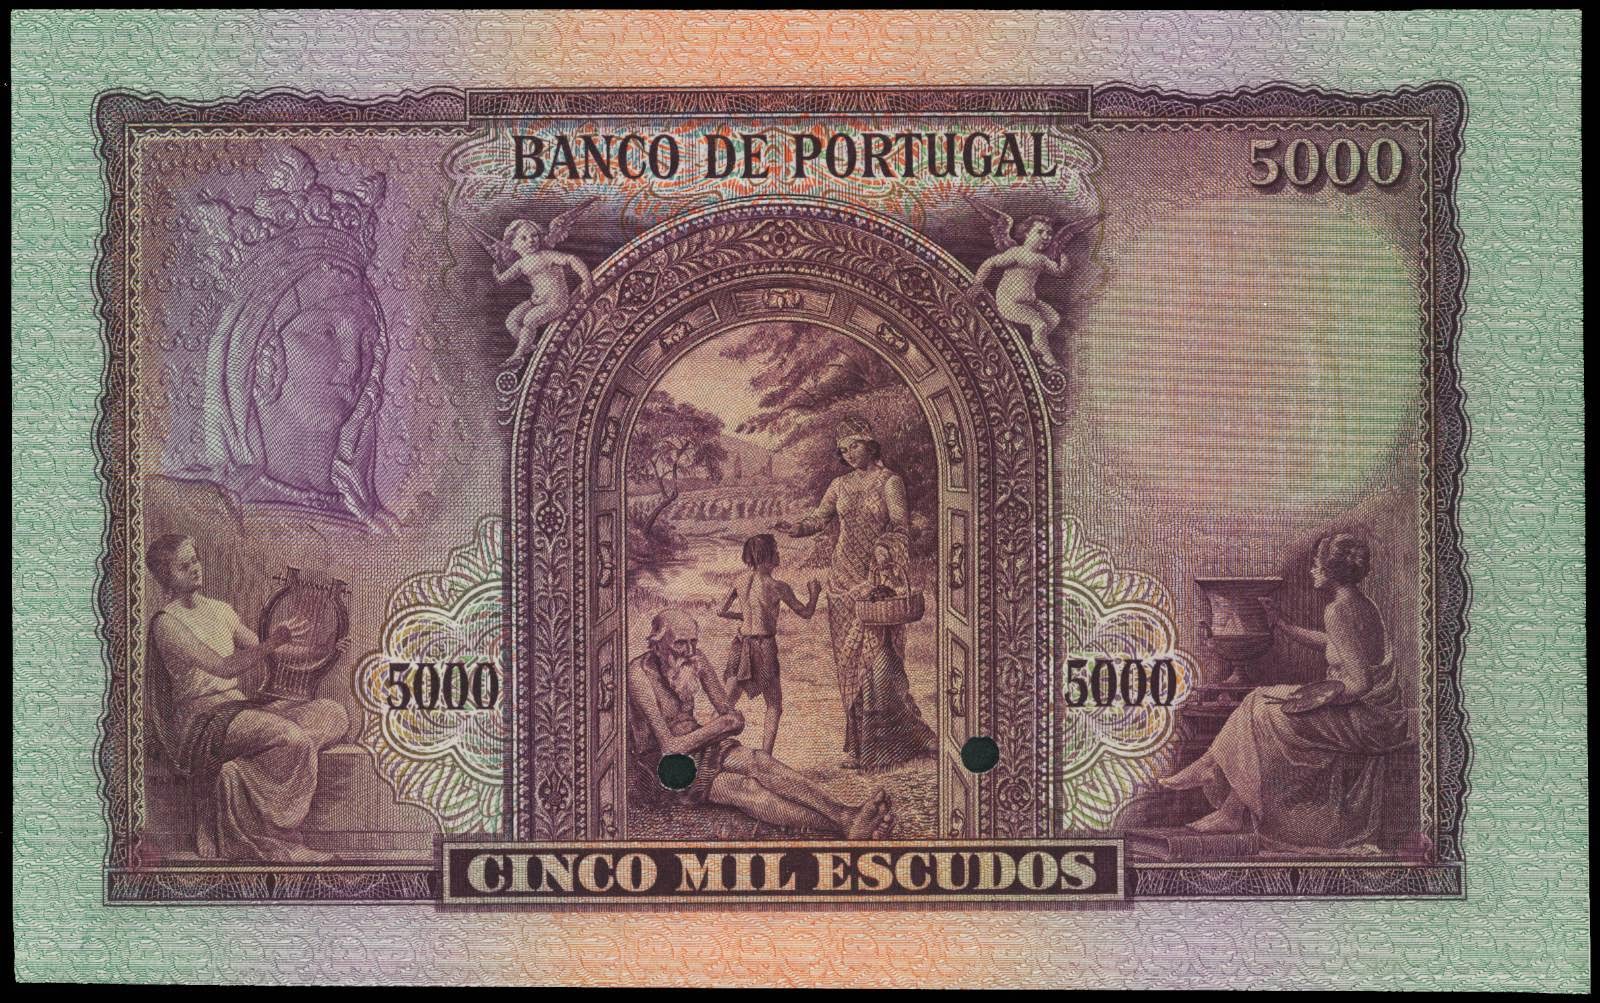 Portugal 5000 Portuguese Escudos banknote 1942